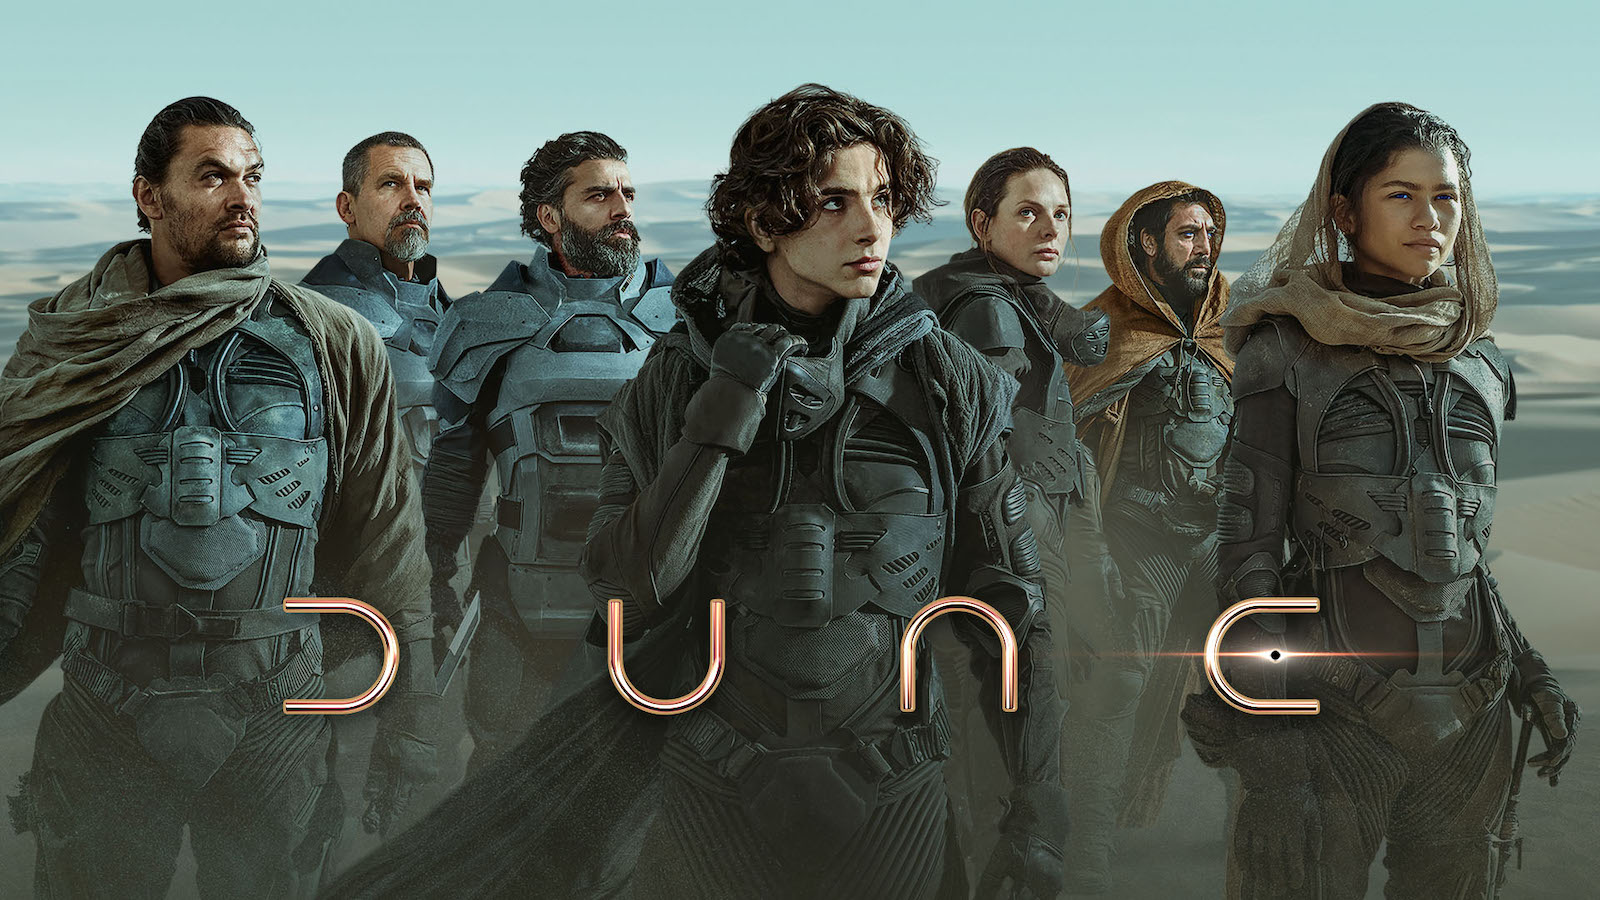 Dune: Parte 2, Léa Seydoux e Florence Pugh nelle nuove immagini ufficiali del sequel